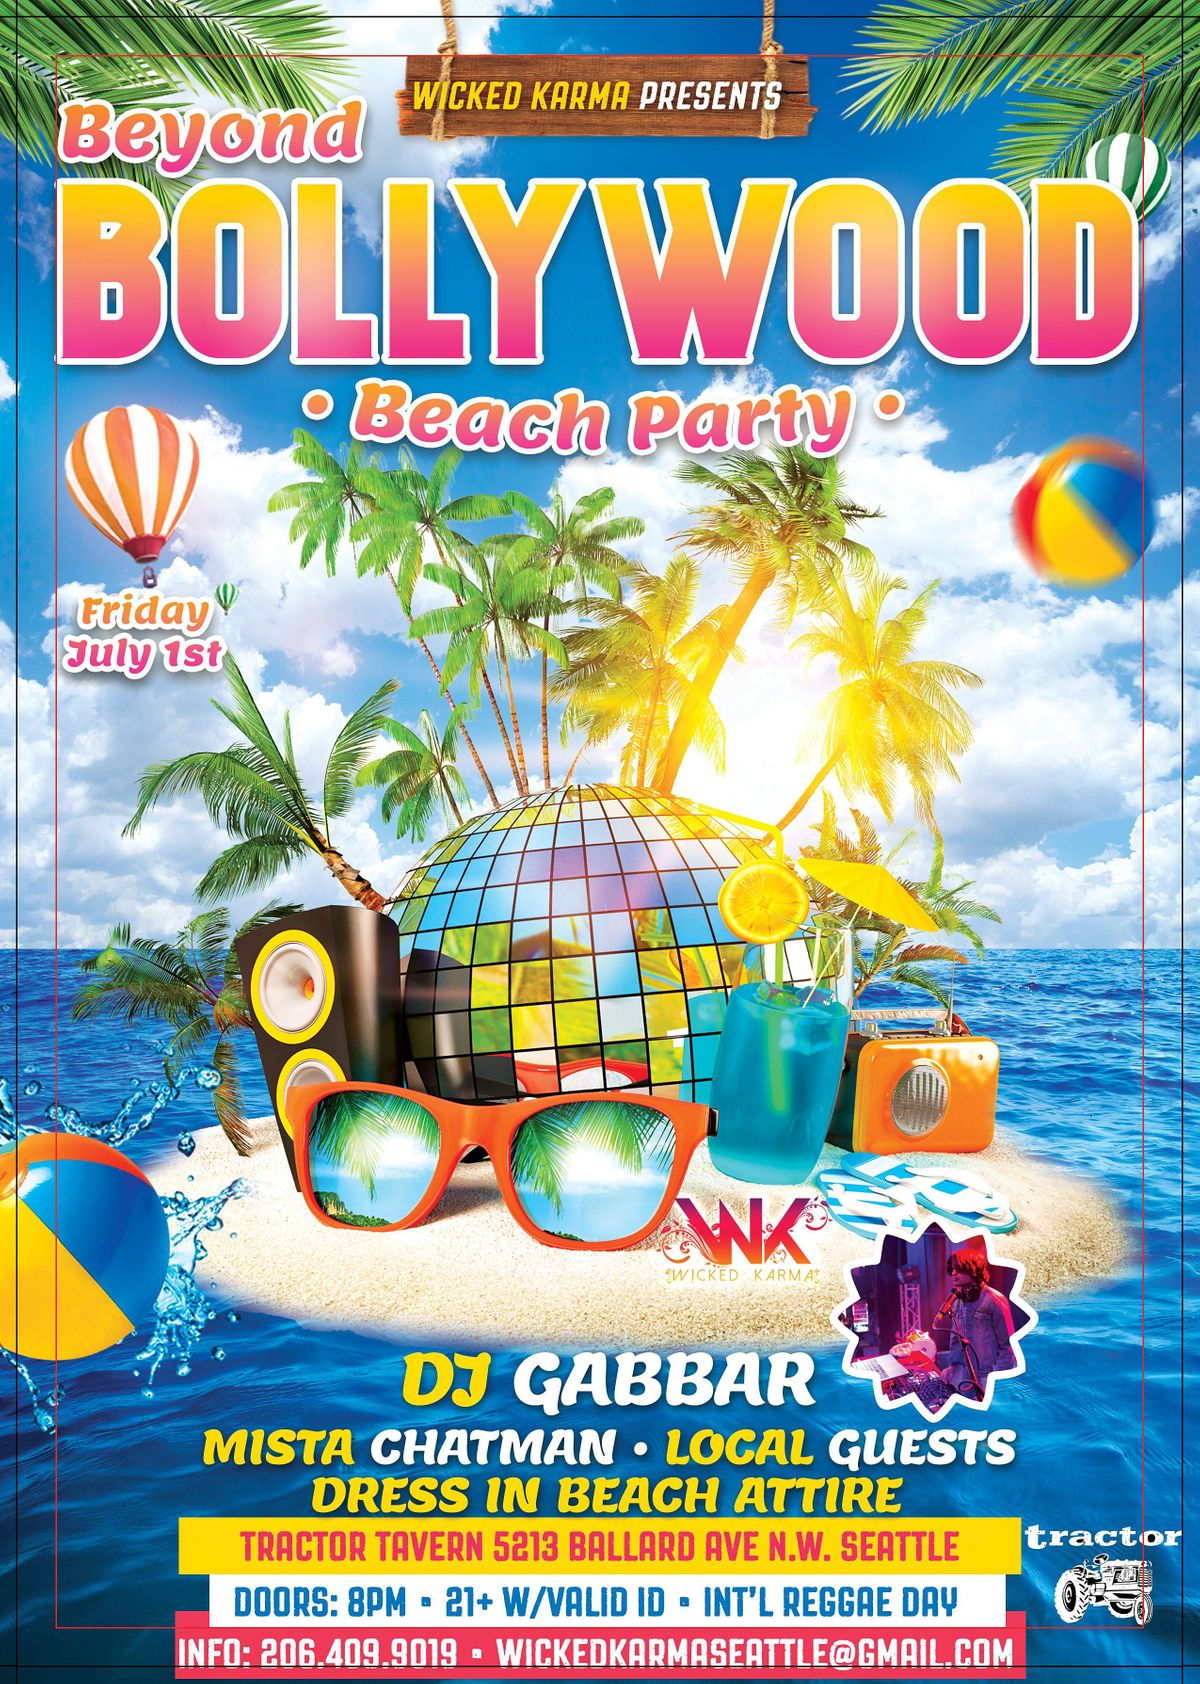 Beyond Bollywood Beach Party w\/DJ Gabbar